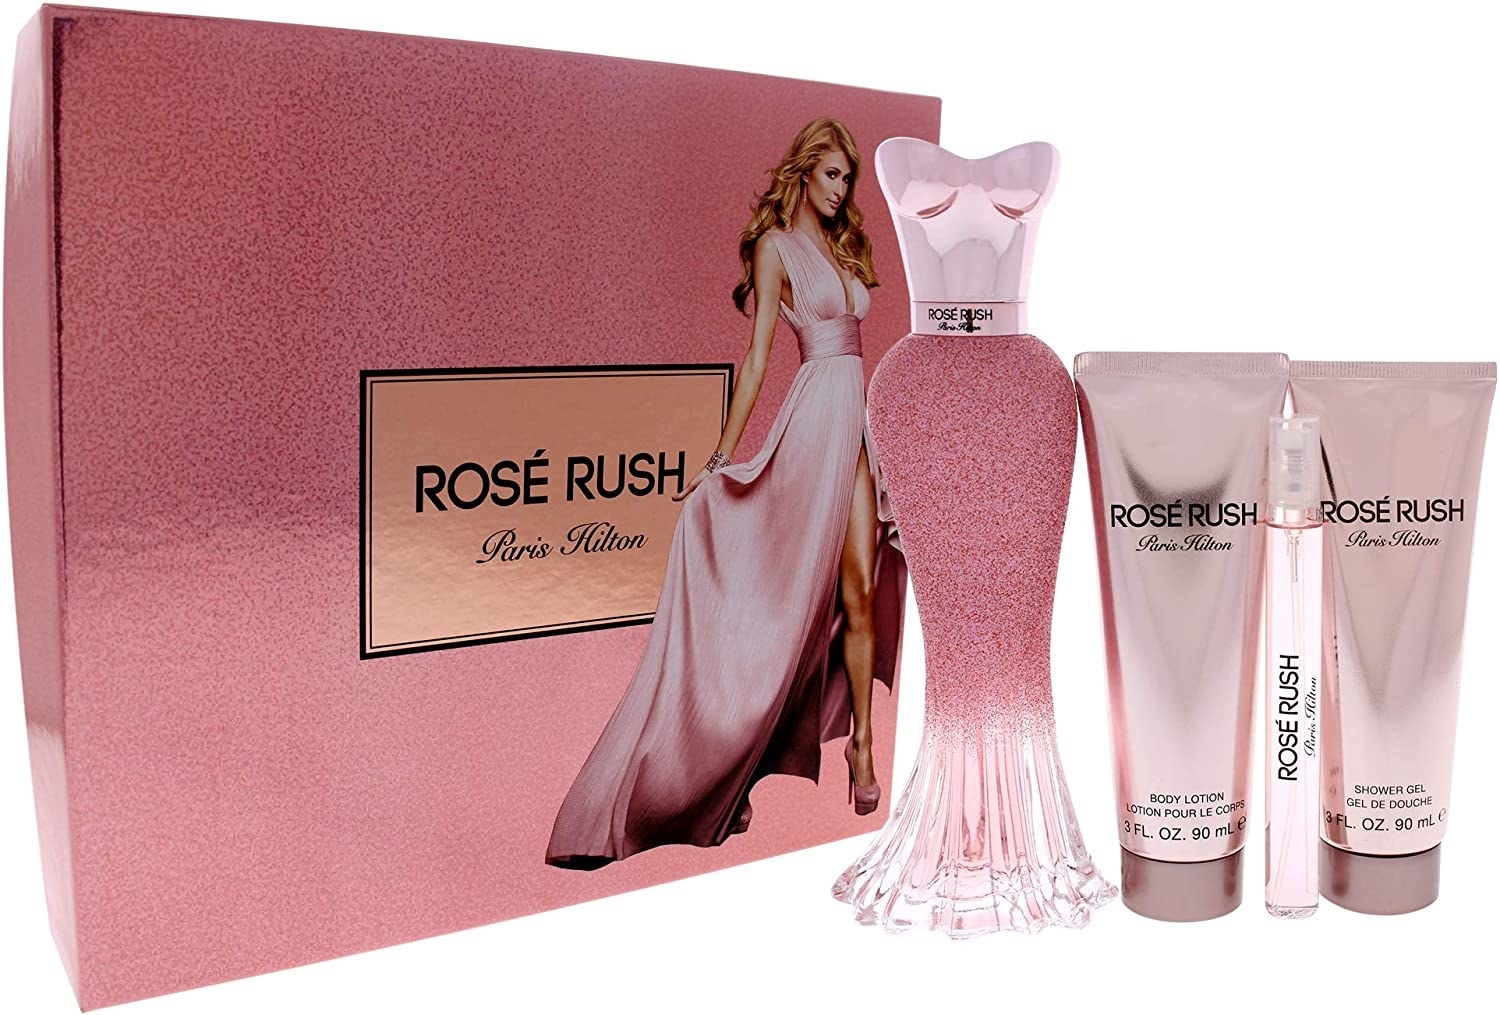 Rosé Rush de Paris Hilton